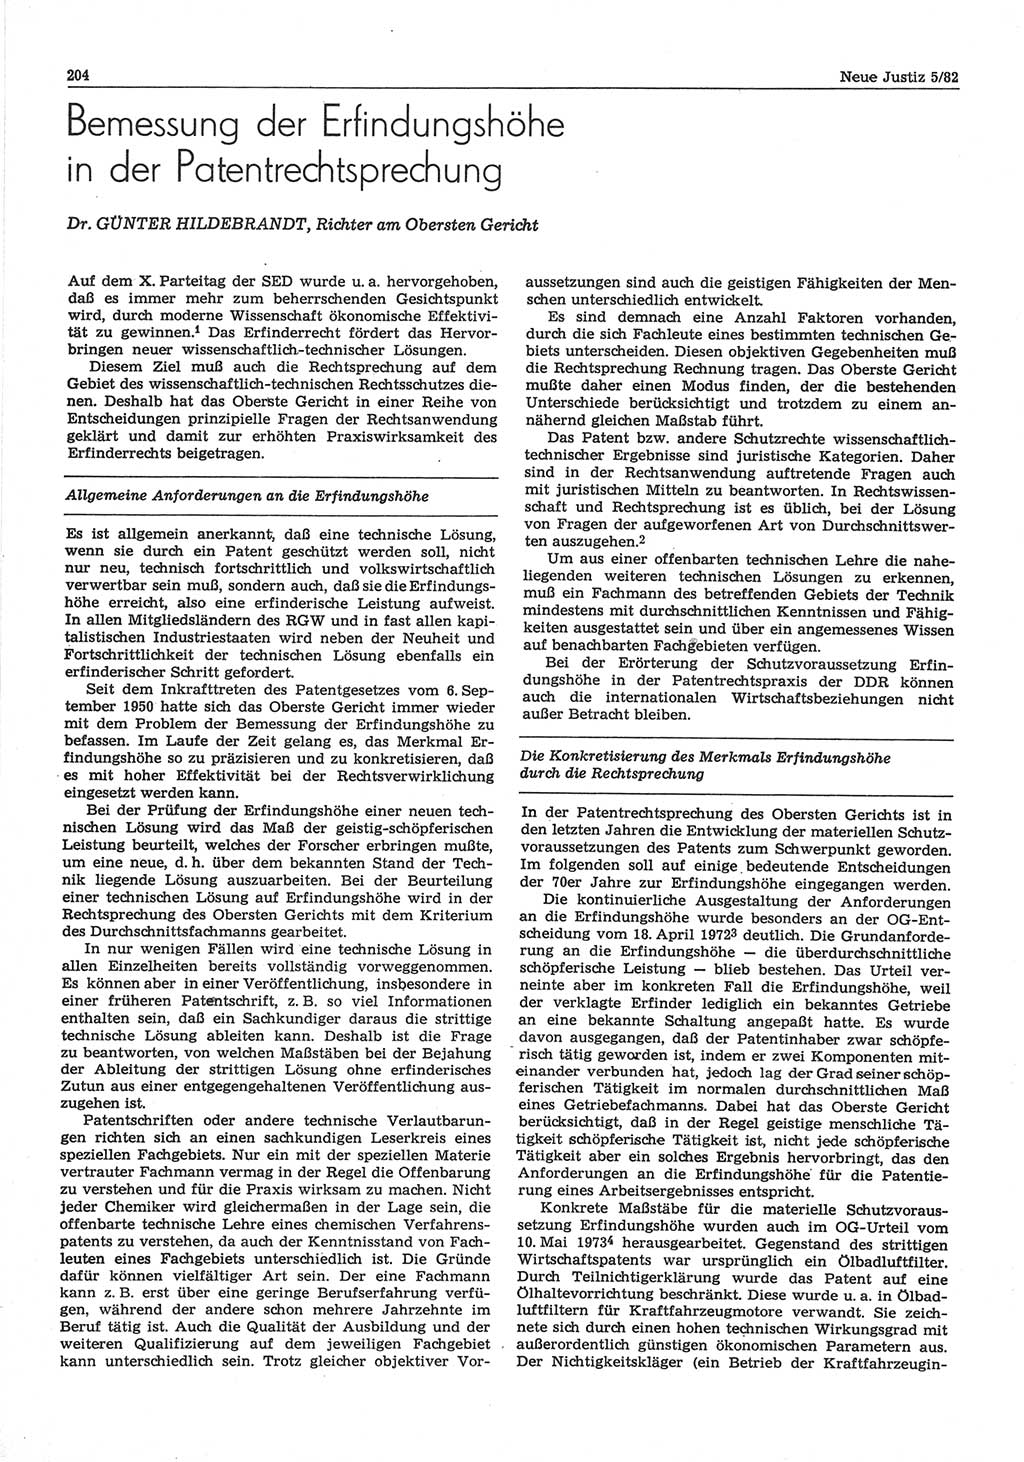 Neue Justiz (NJ), Zeitschrift für sozialistisches Recht und Gesetzlichkeit [Deutsche Demokratische Republik (DDR)], 36. Jahrgang 1982, Seite 204 (NJ DDR 1982, S. 204)